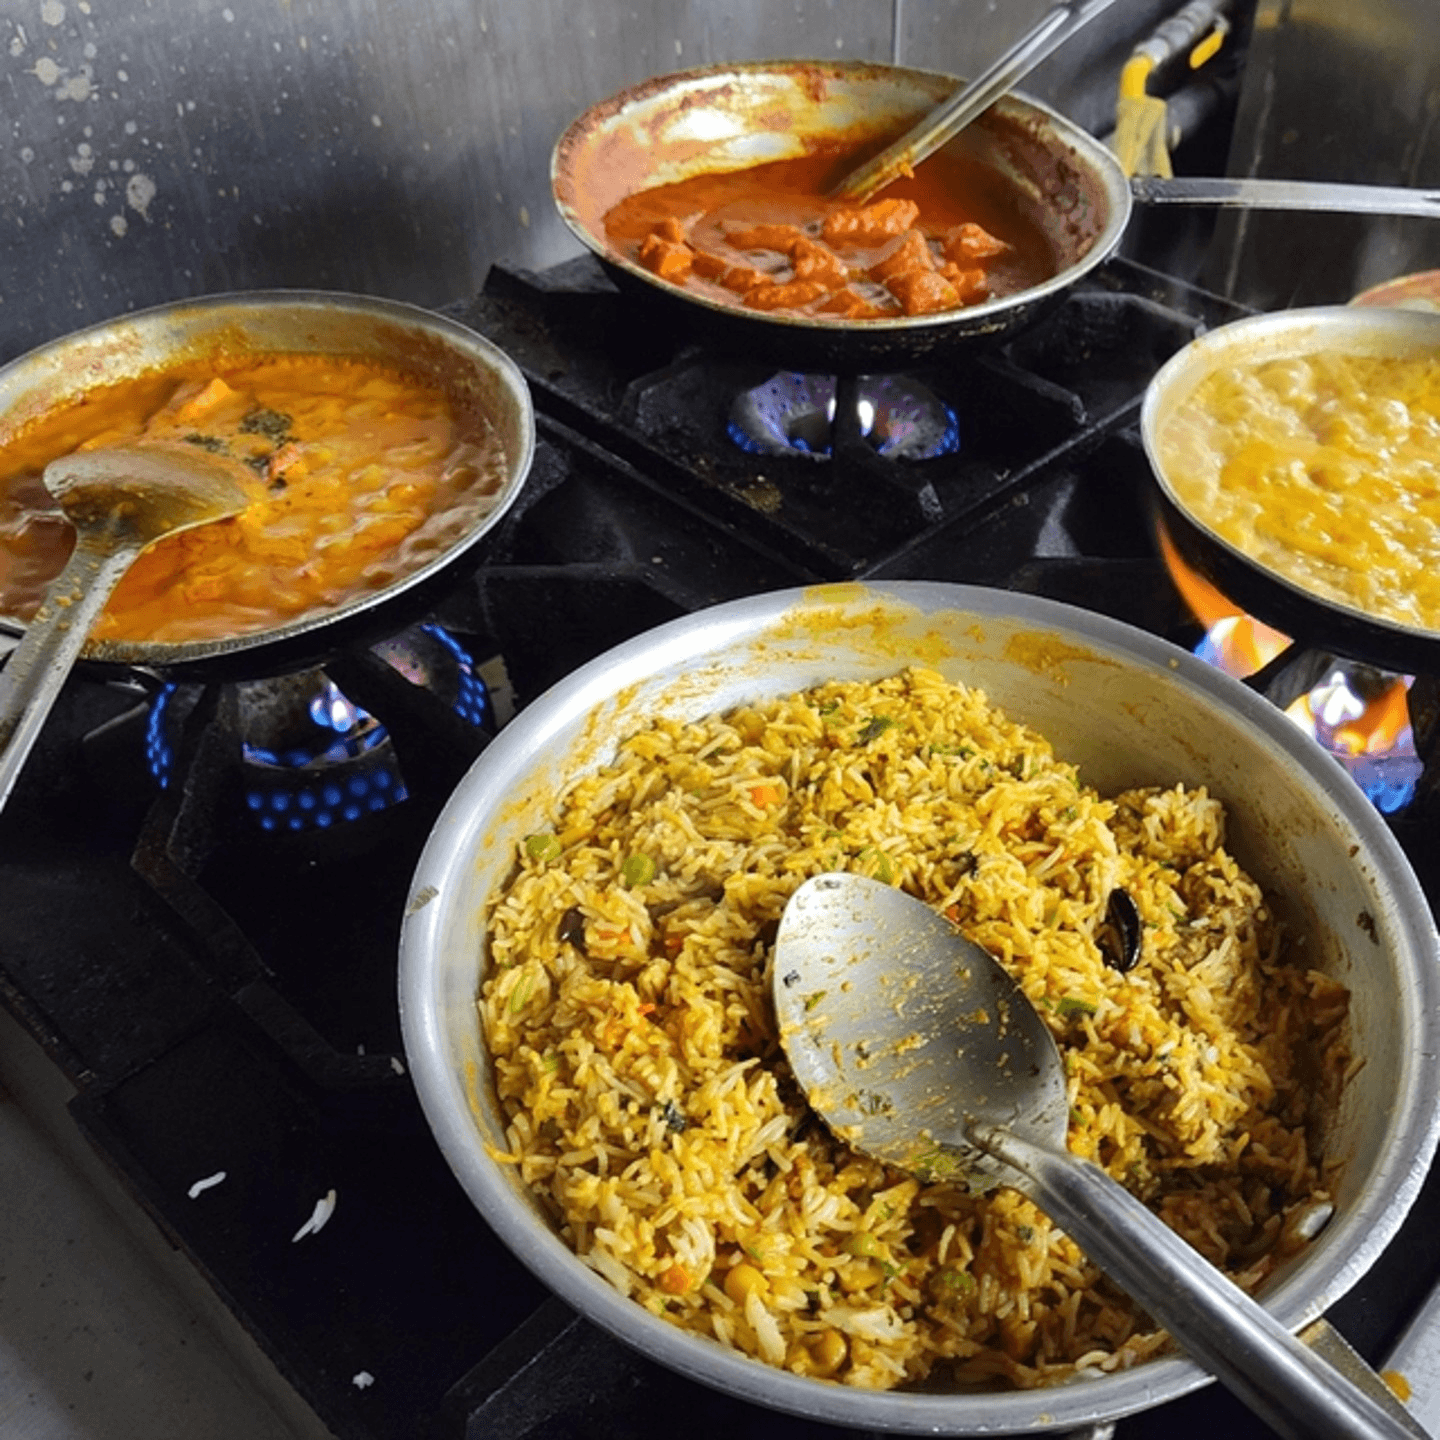 Fine Indian Cuisine